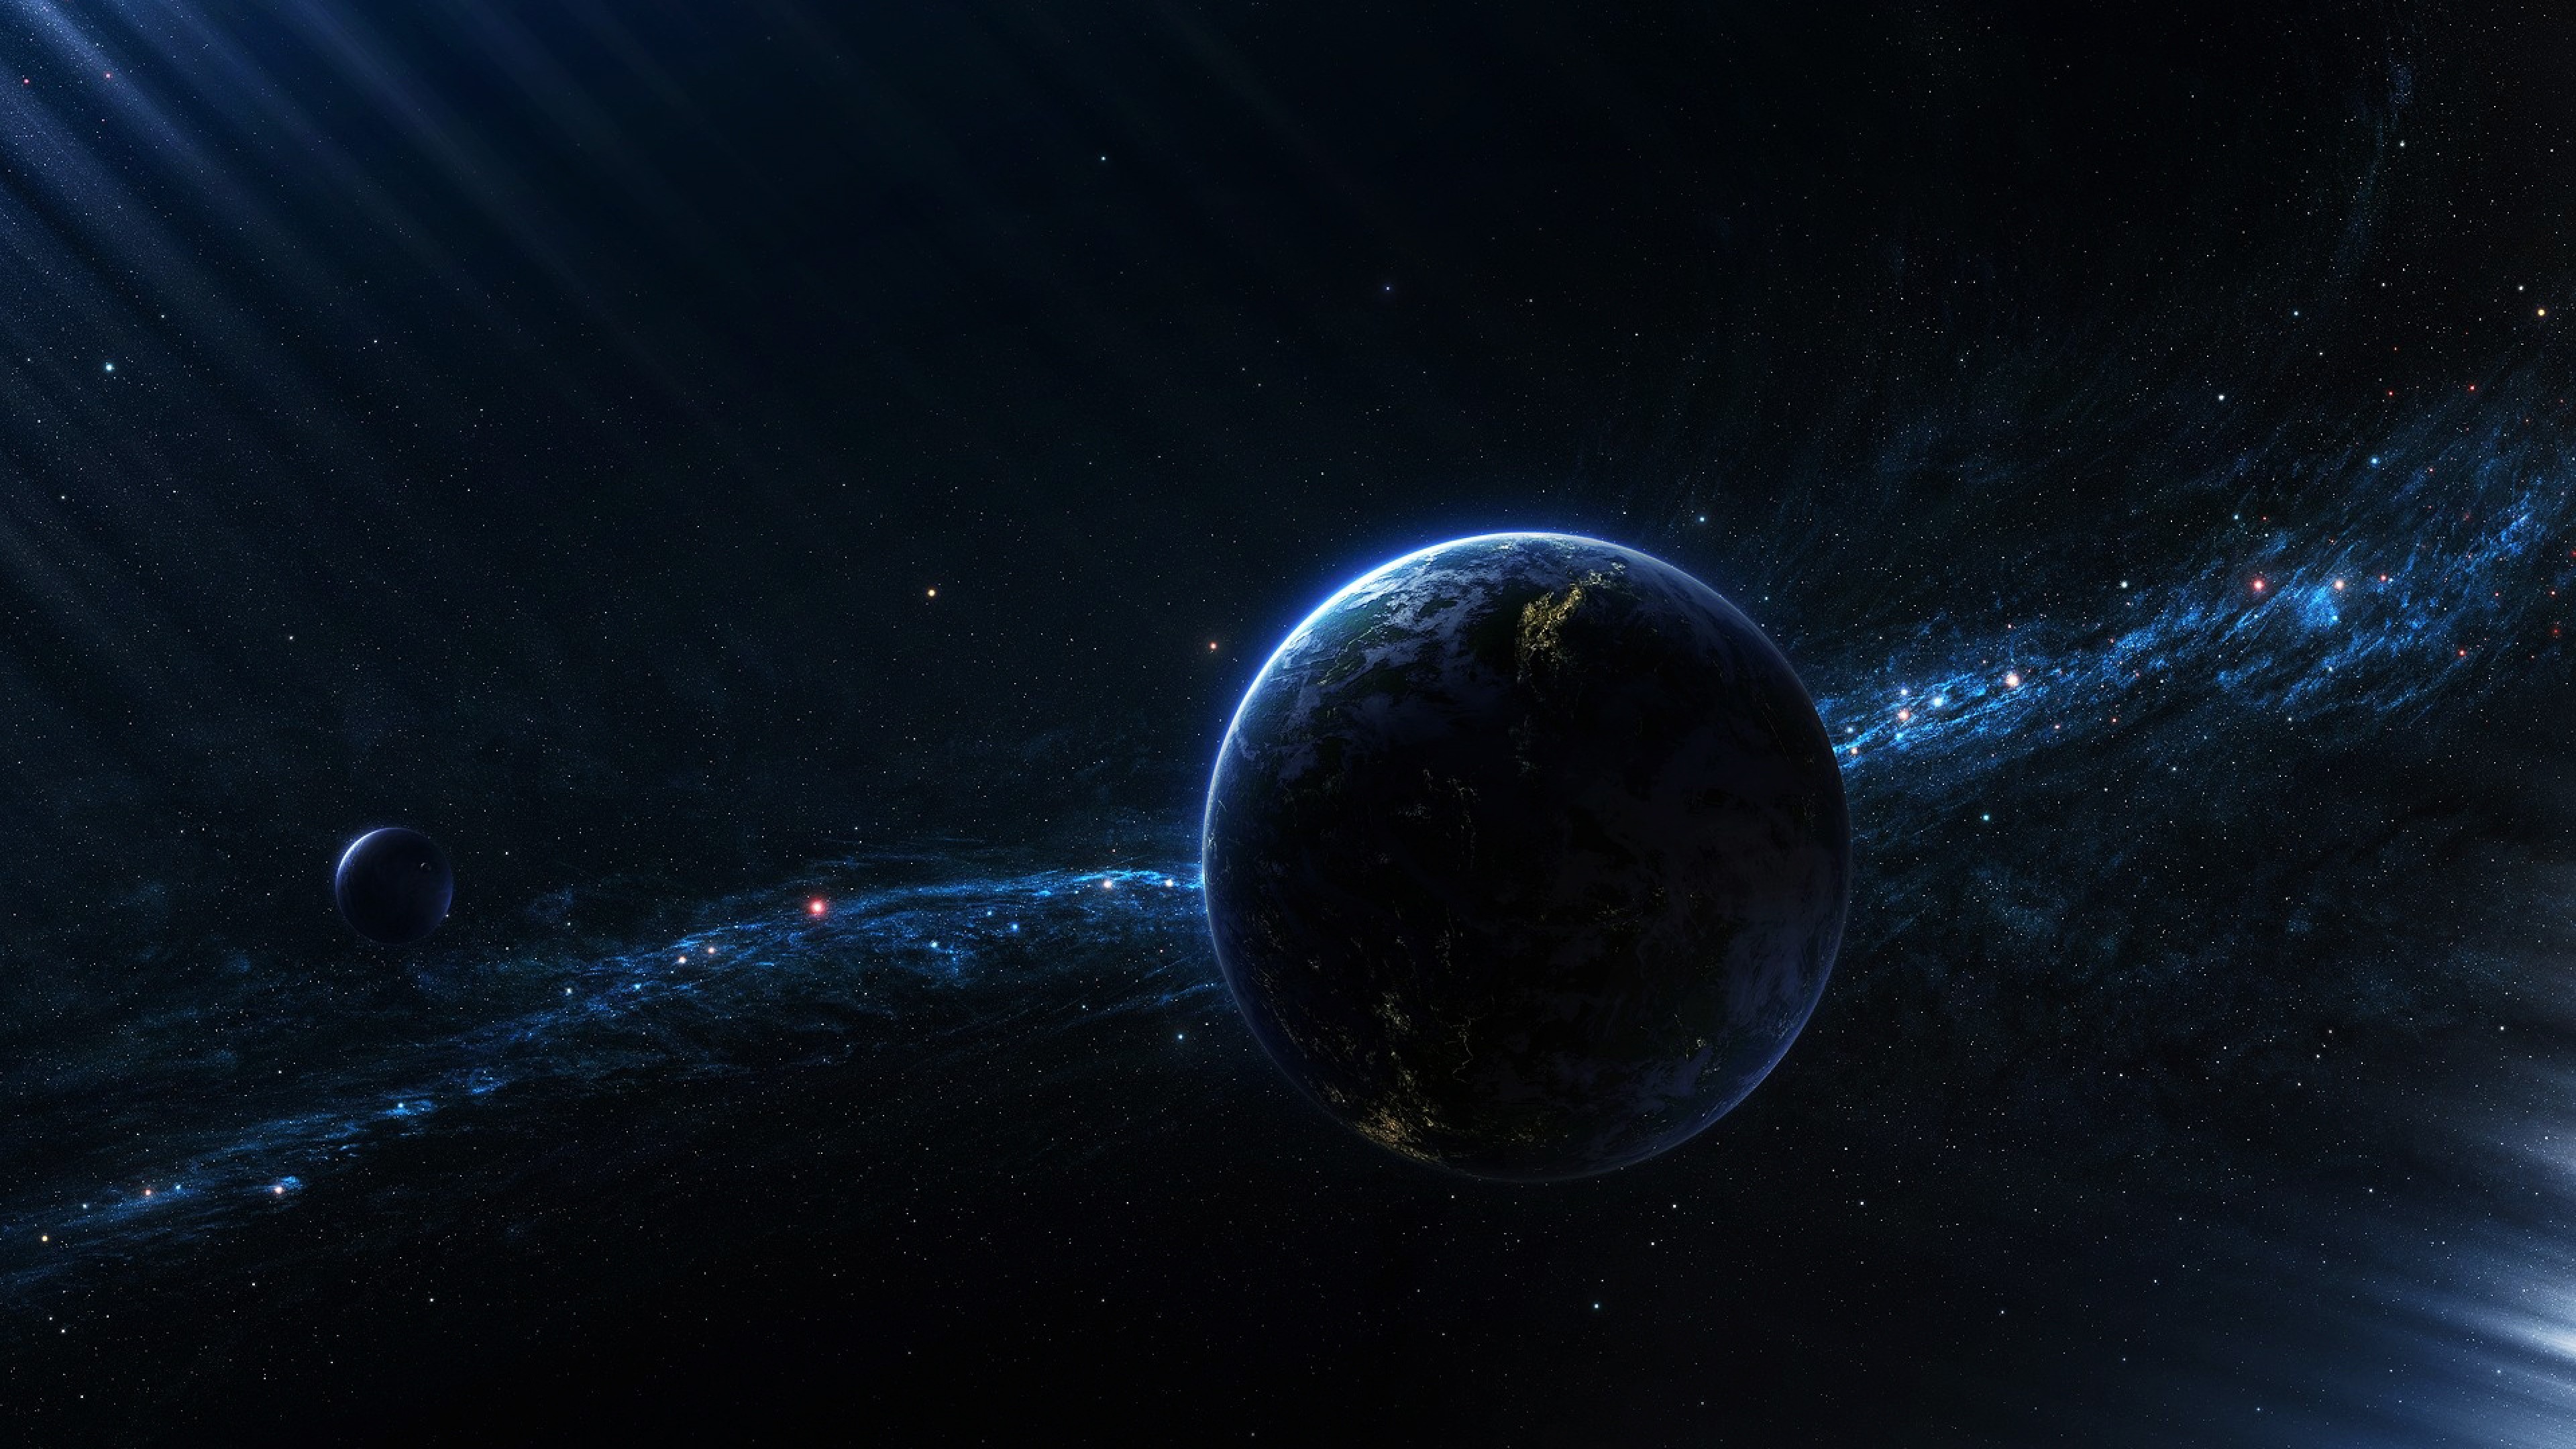 Обои космическое пространство астрономический объект атмосфера планета космос 4k Ultra Hd 8953